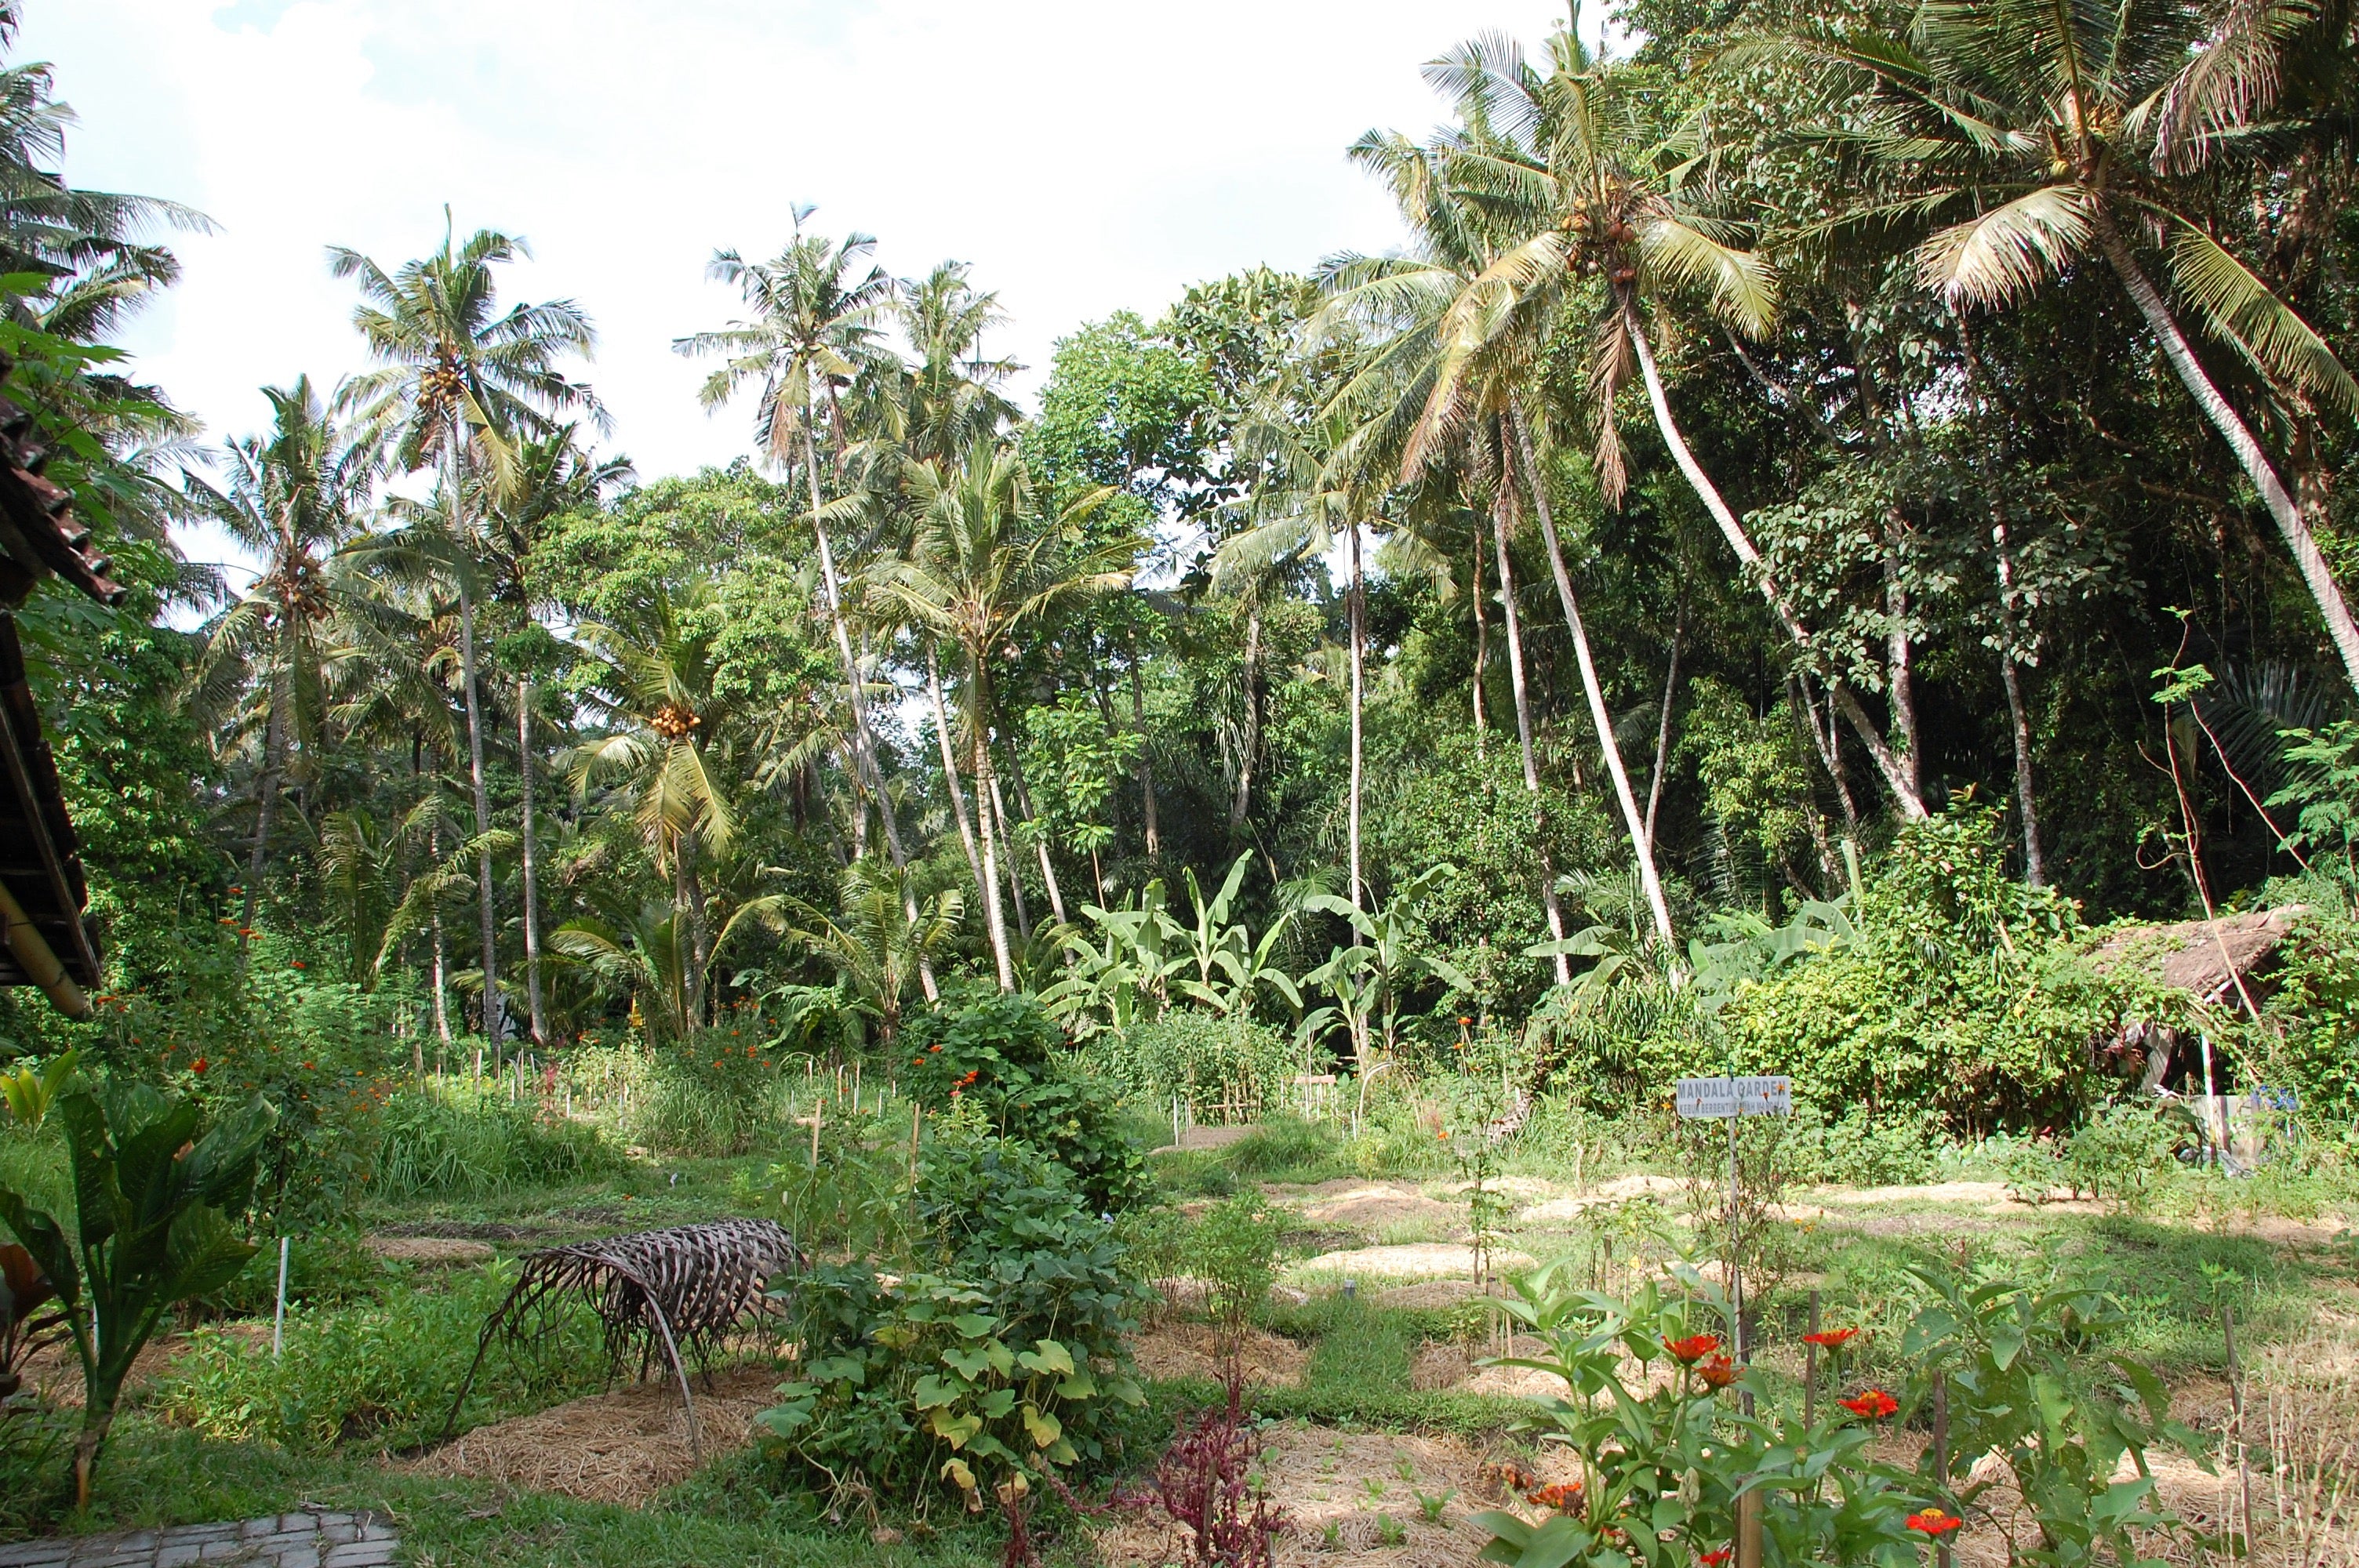 Il giardino-orto nella giungla, a Bali, dove si trova il sito produttivo dell'olio di cocco Coccoon